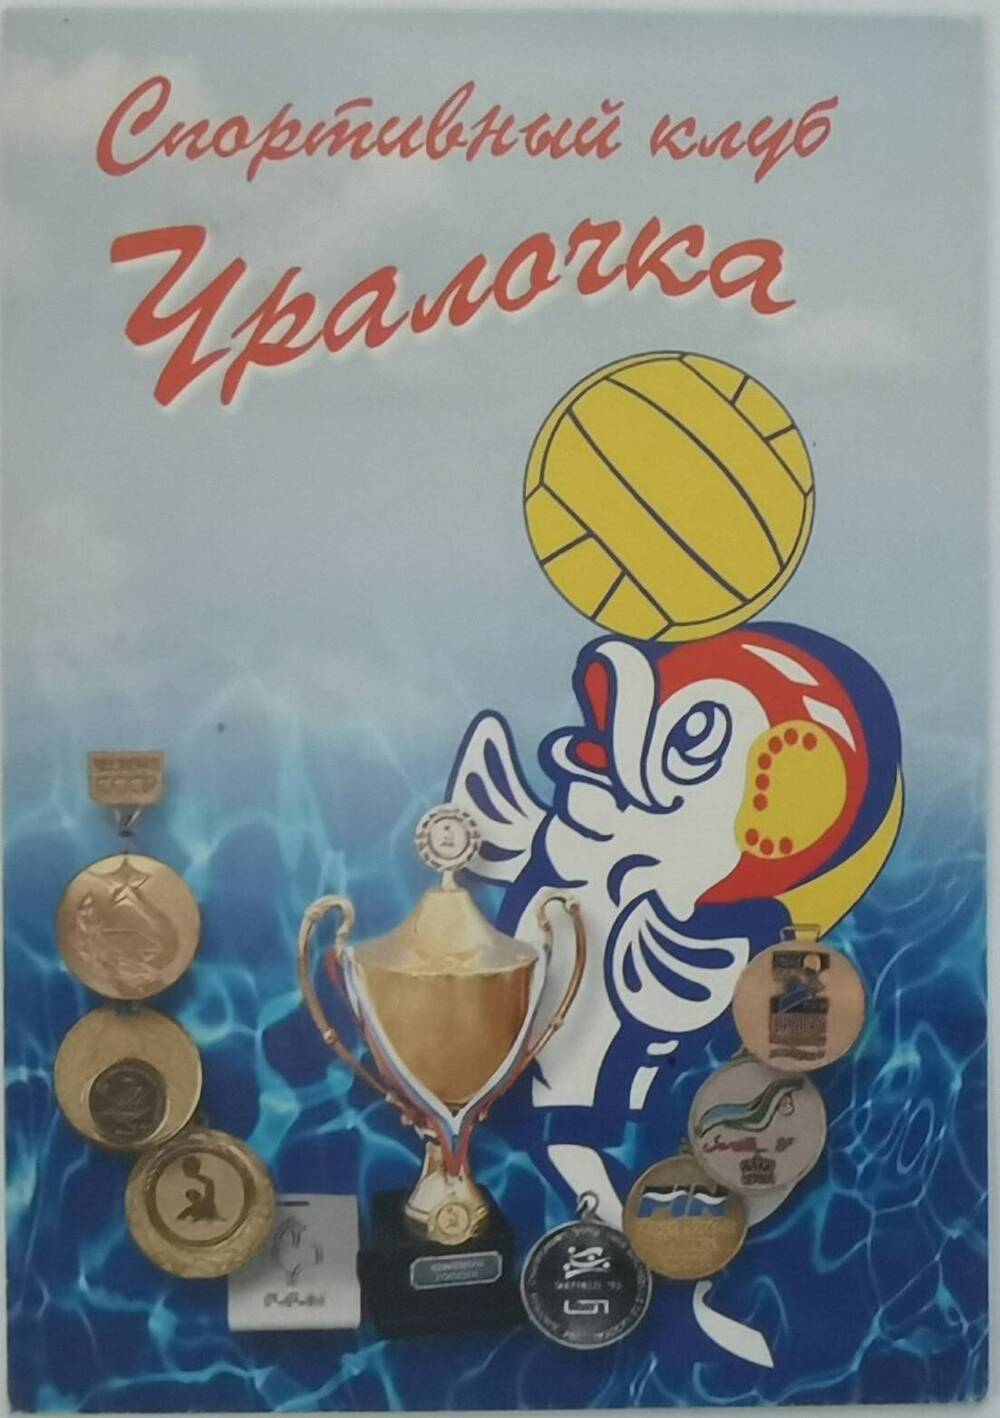 Календарь карманный на 2003 г. Спортивный клуб Уралочка. г. Златоуст, 2002 г.